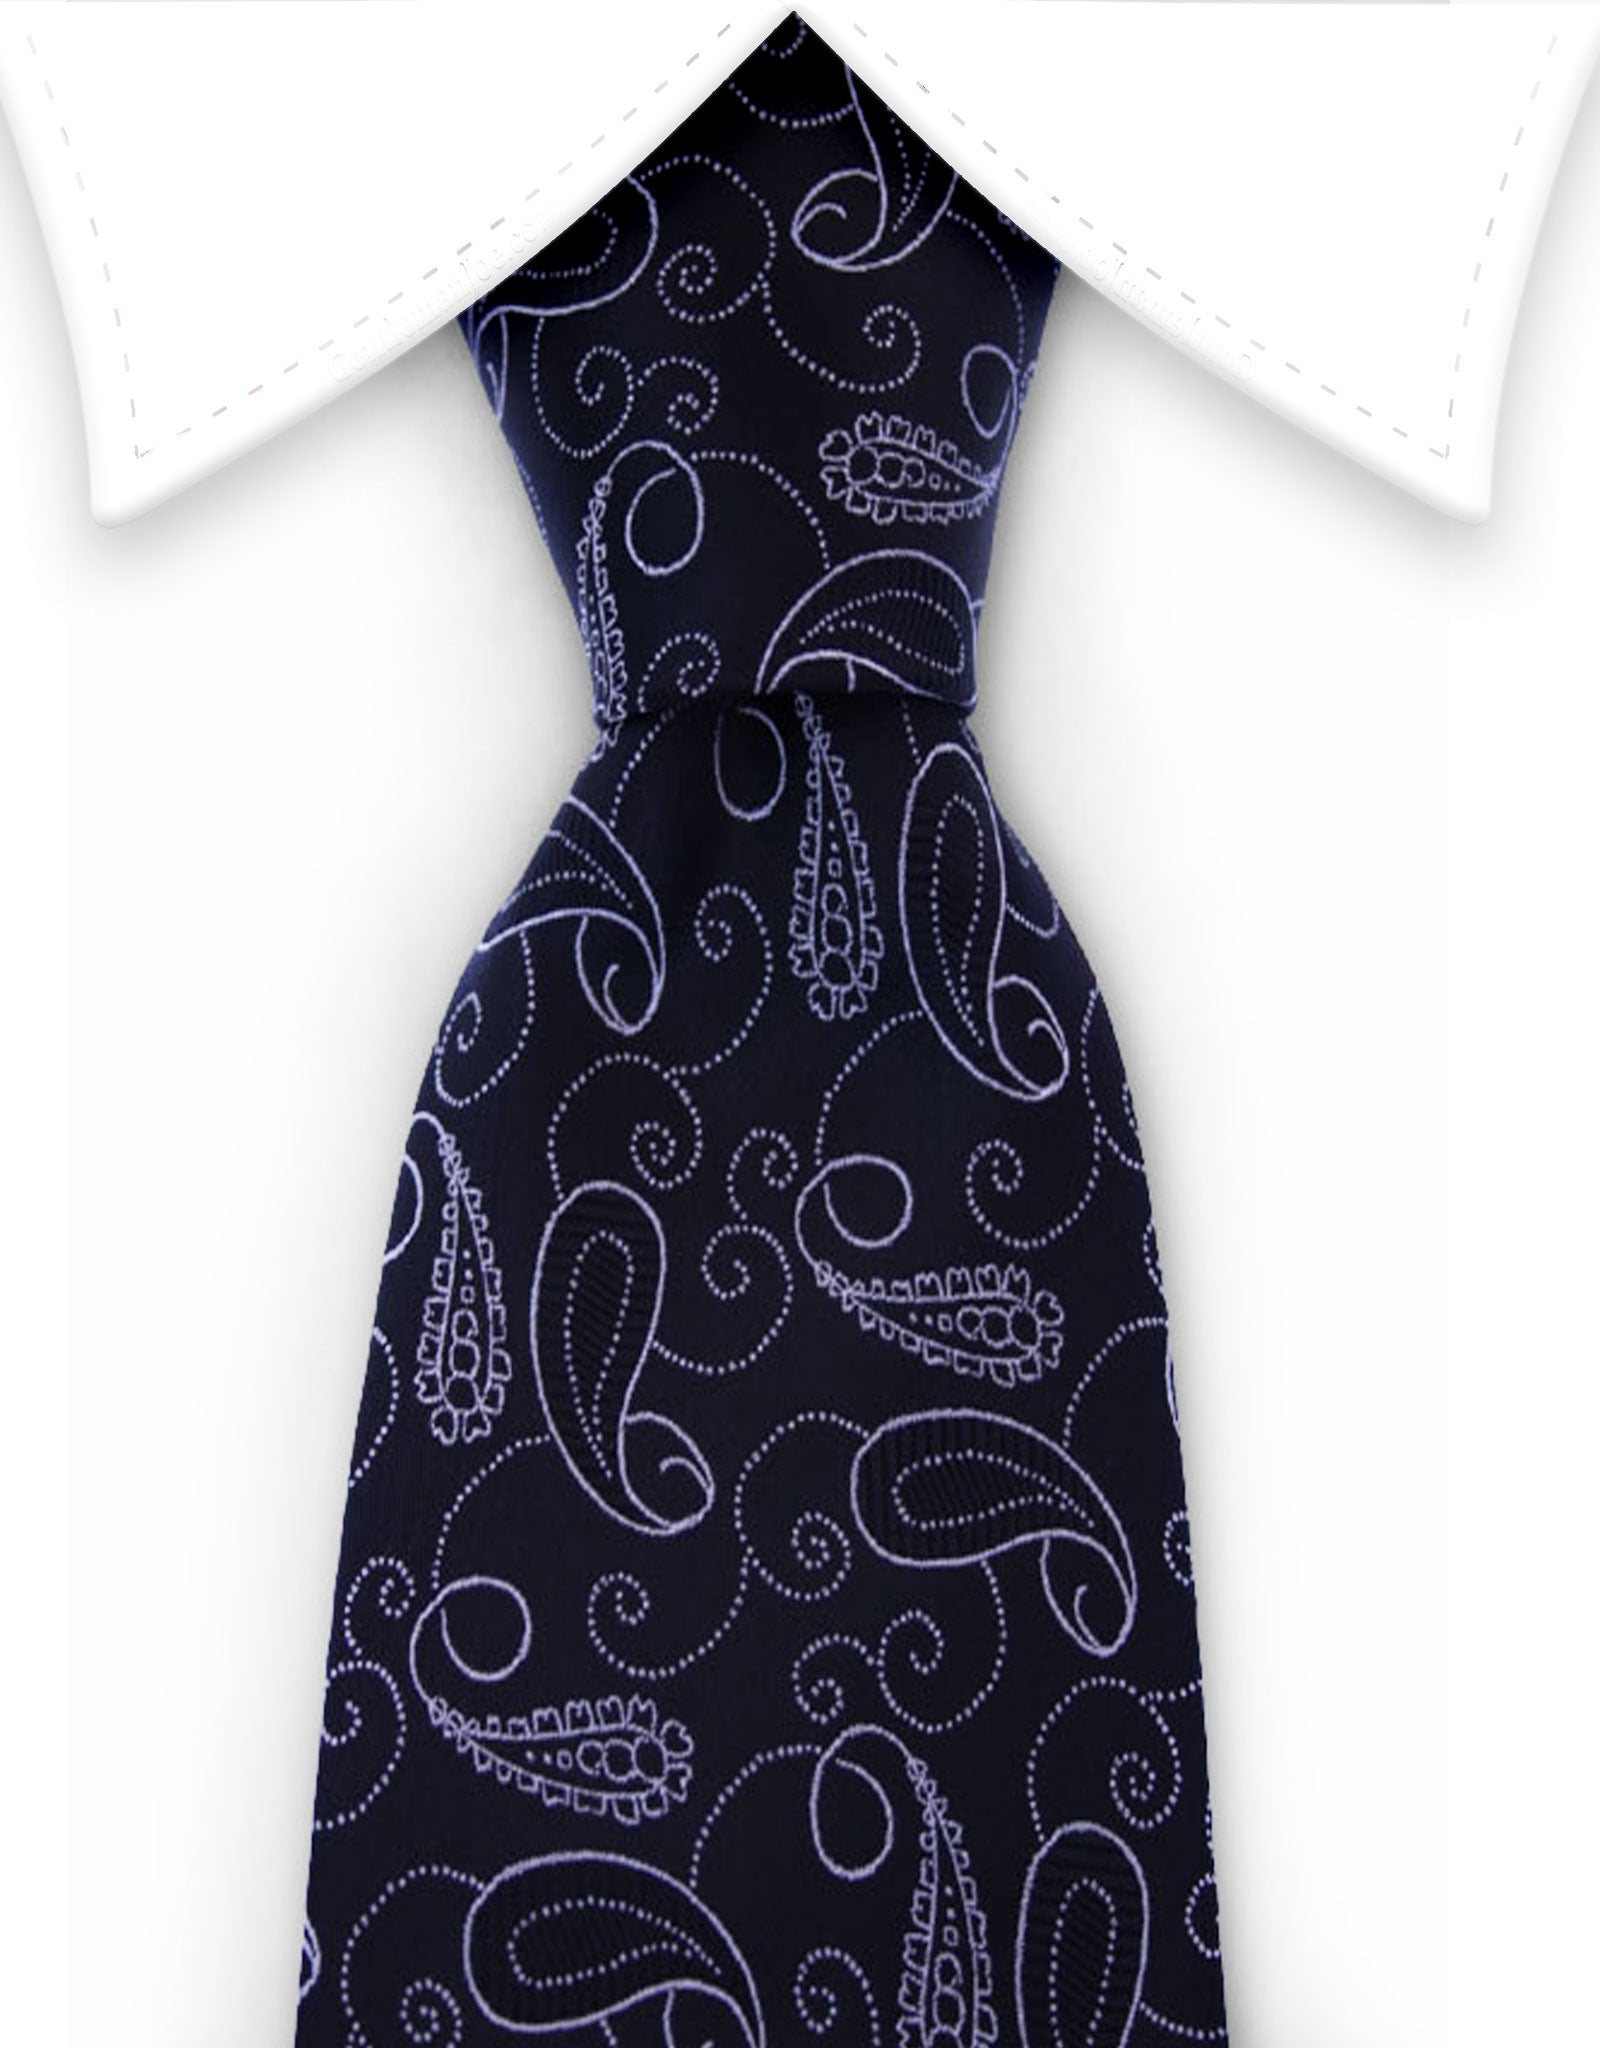 Black & silver paisley necktie